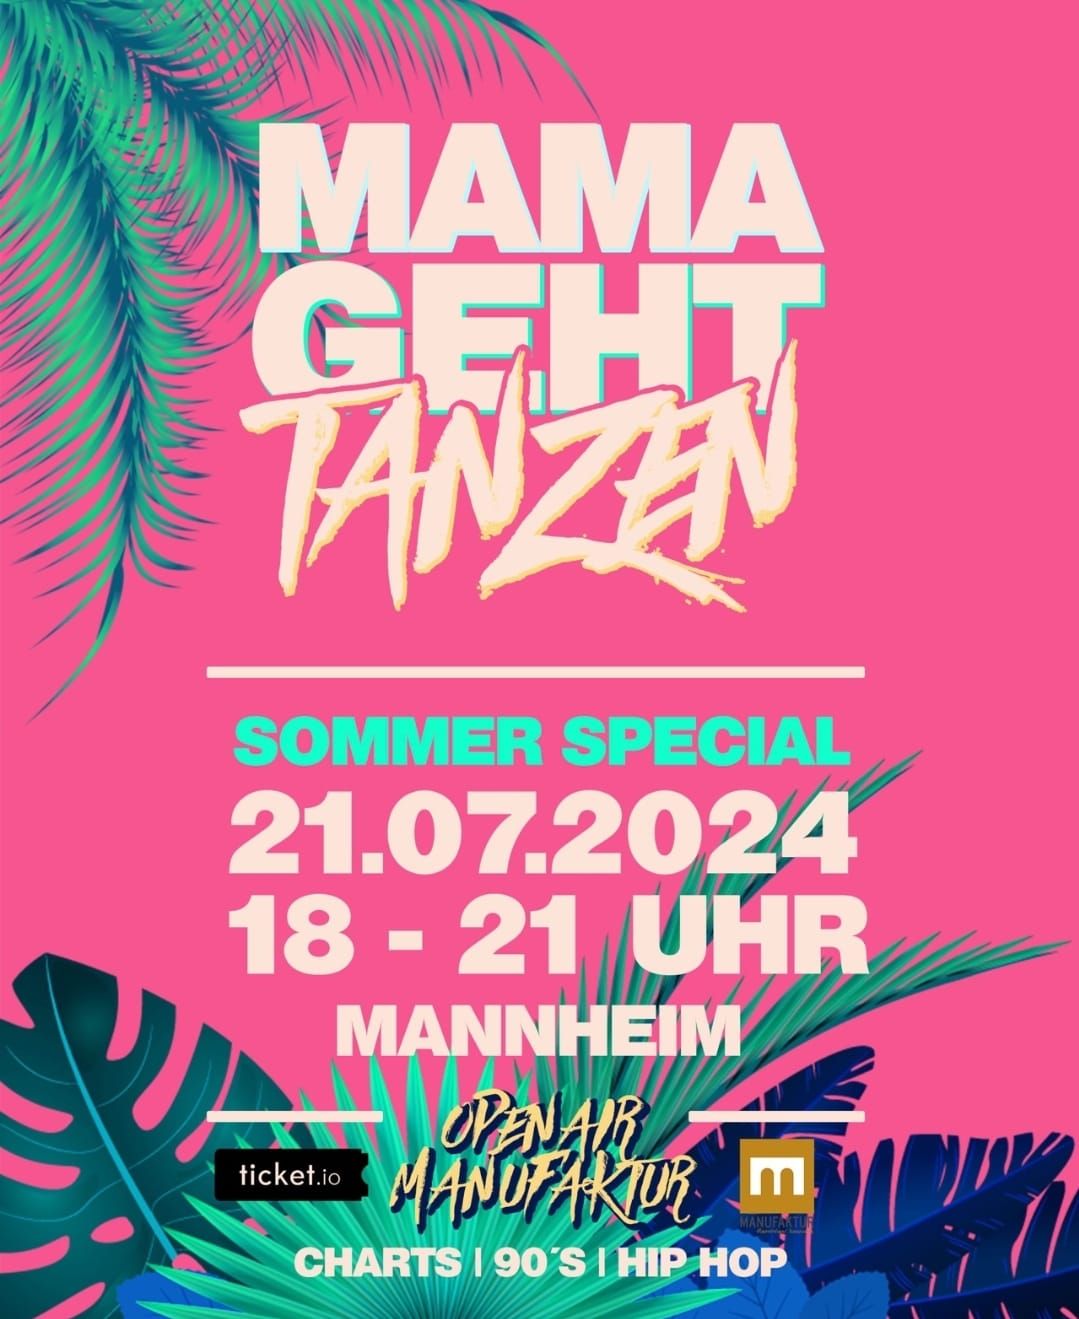 Mamagehttanzen Mannheim